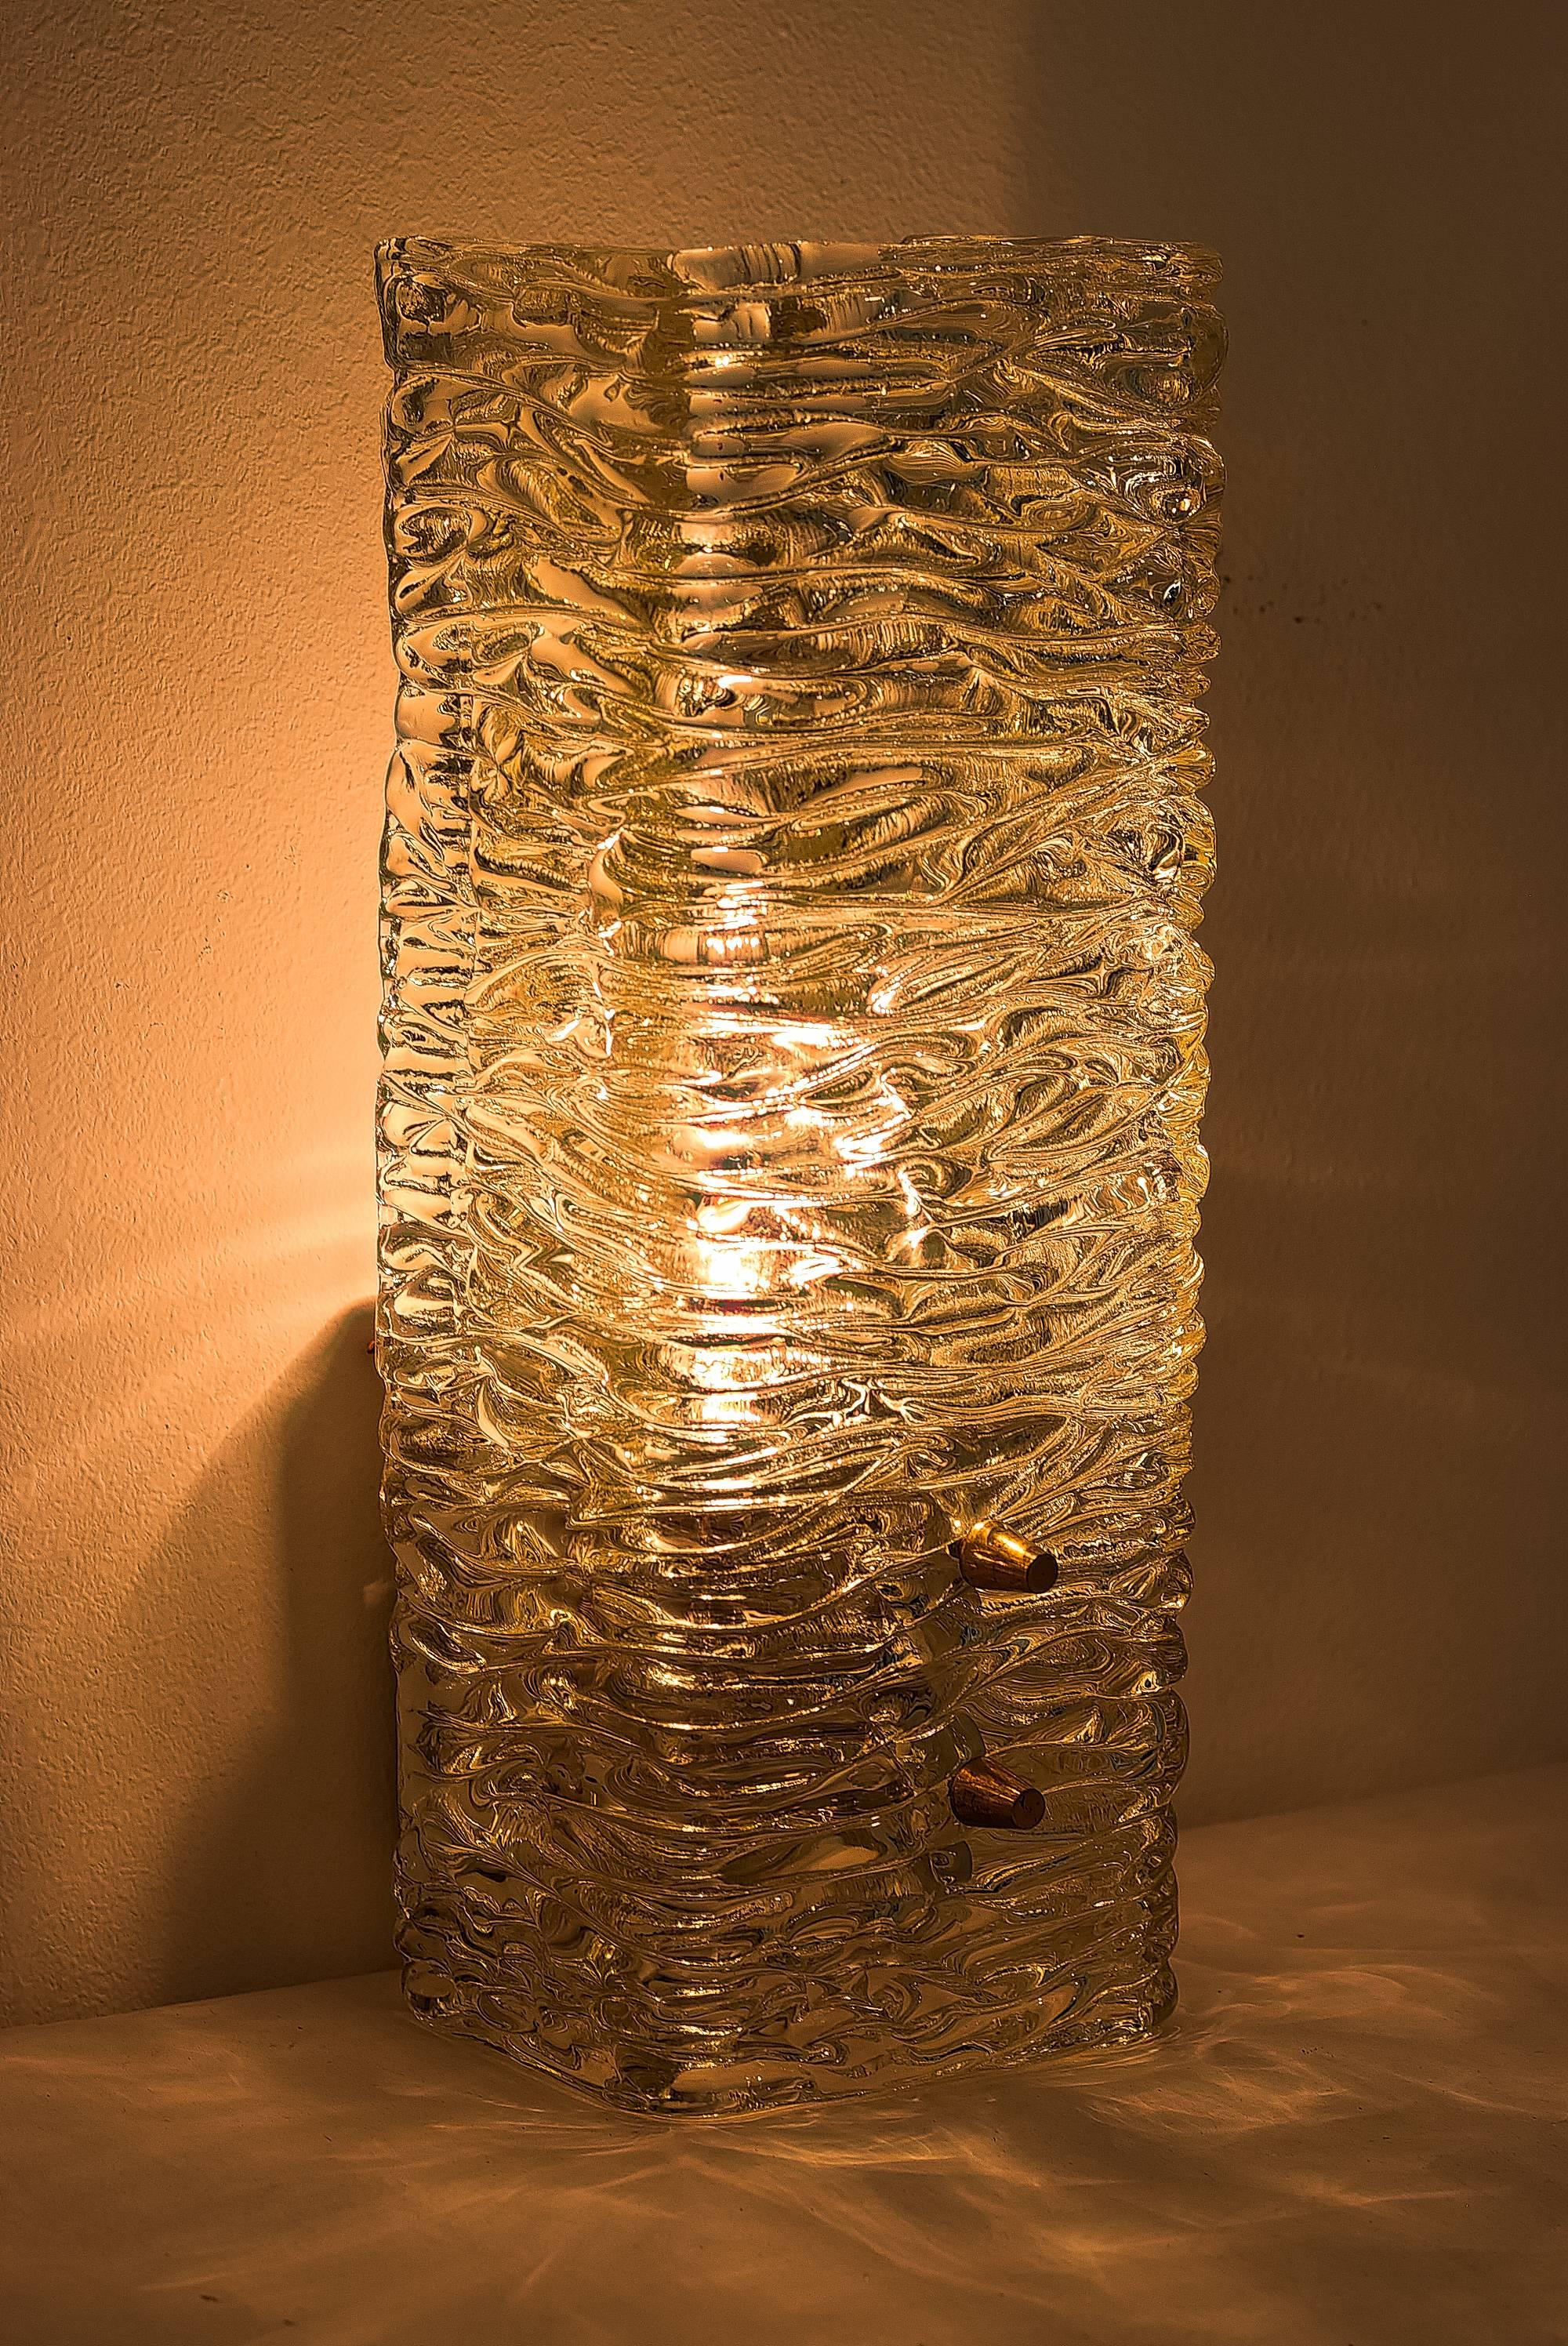 Kalmar-Leuchte aus strukturiertem Glas, ca. 1950er Jahre.
Ursprünglicher Zustand.